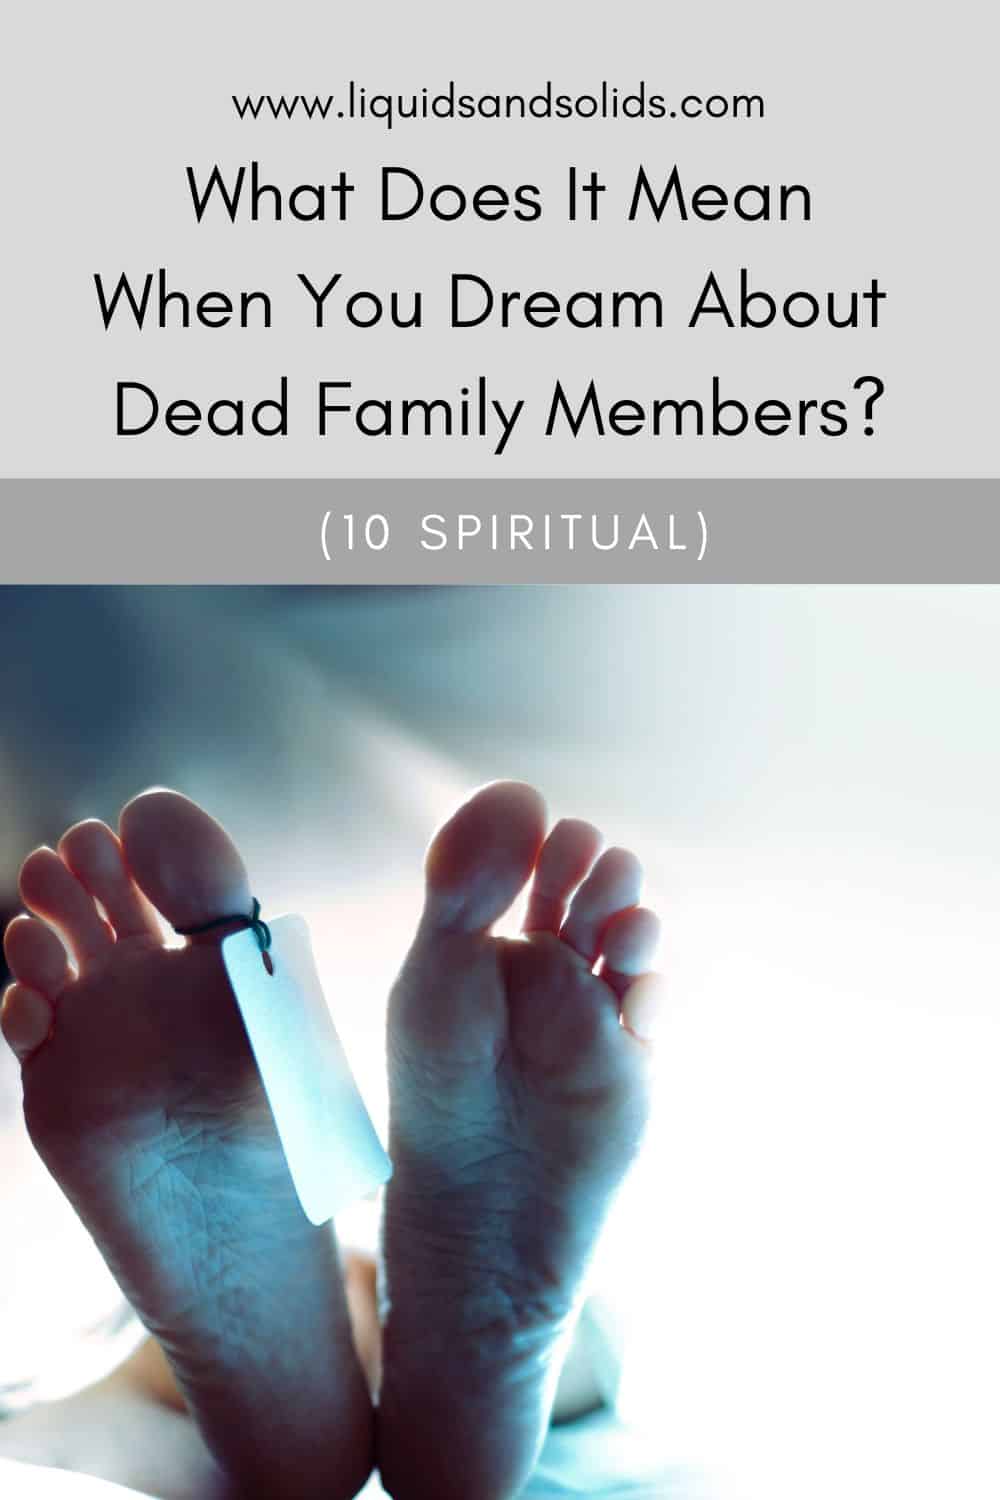  تحلم بأفراد الأسرة المتوفين؟ (10 معاني روحية)